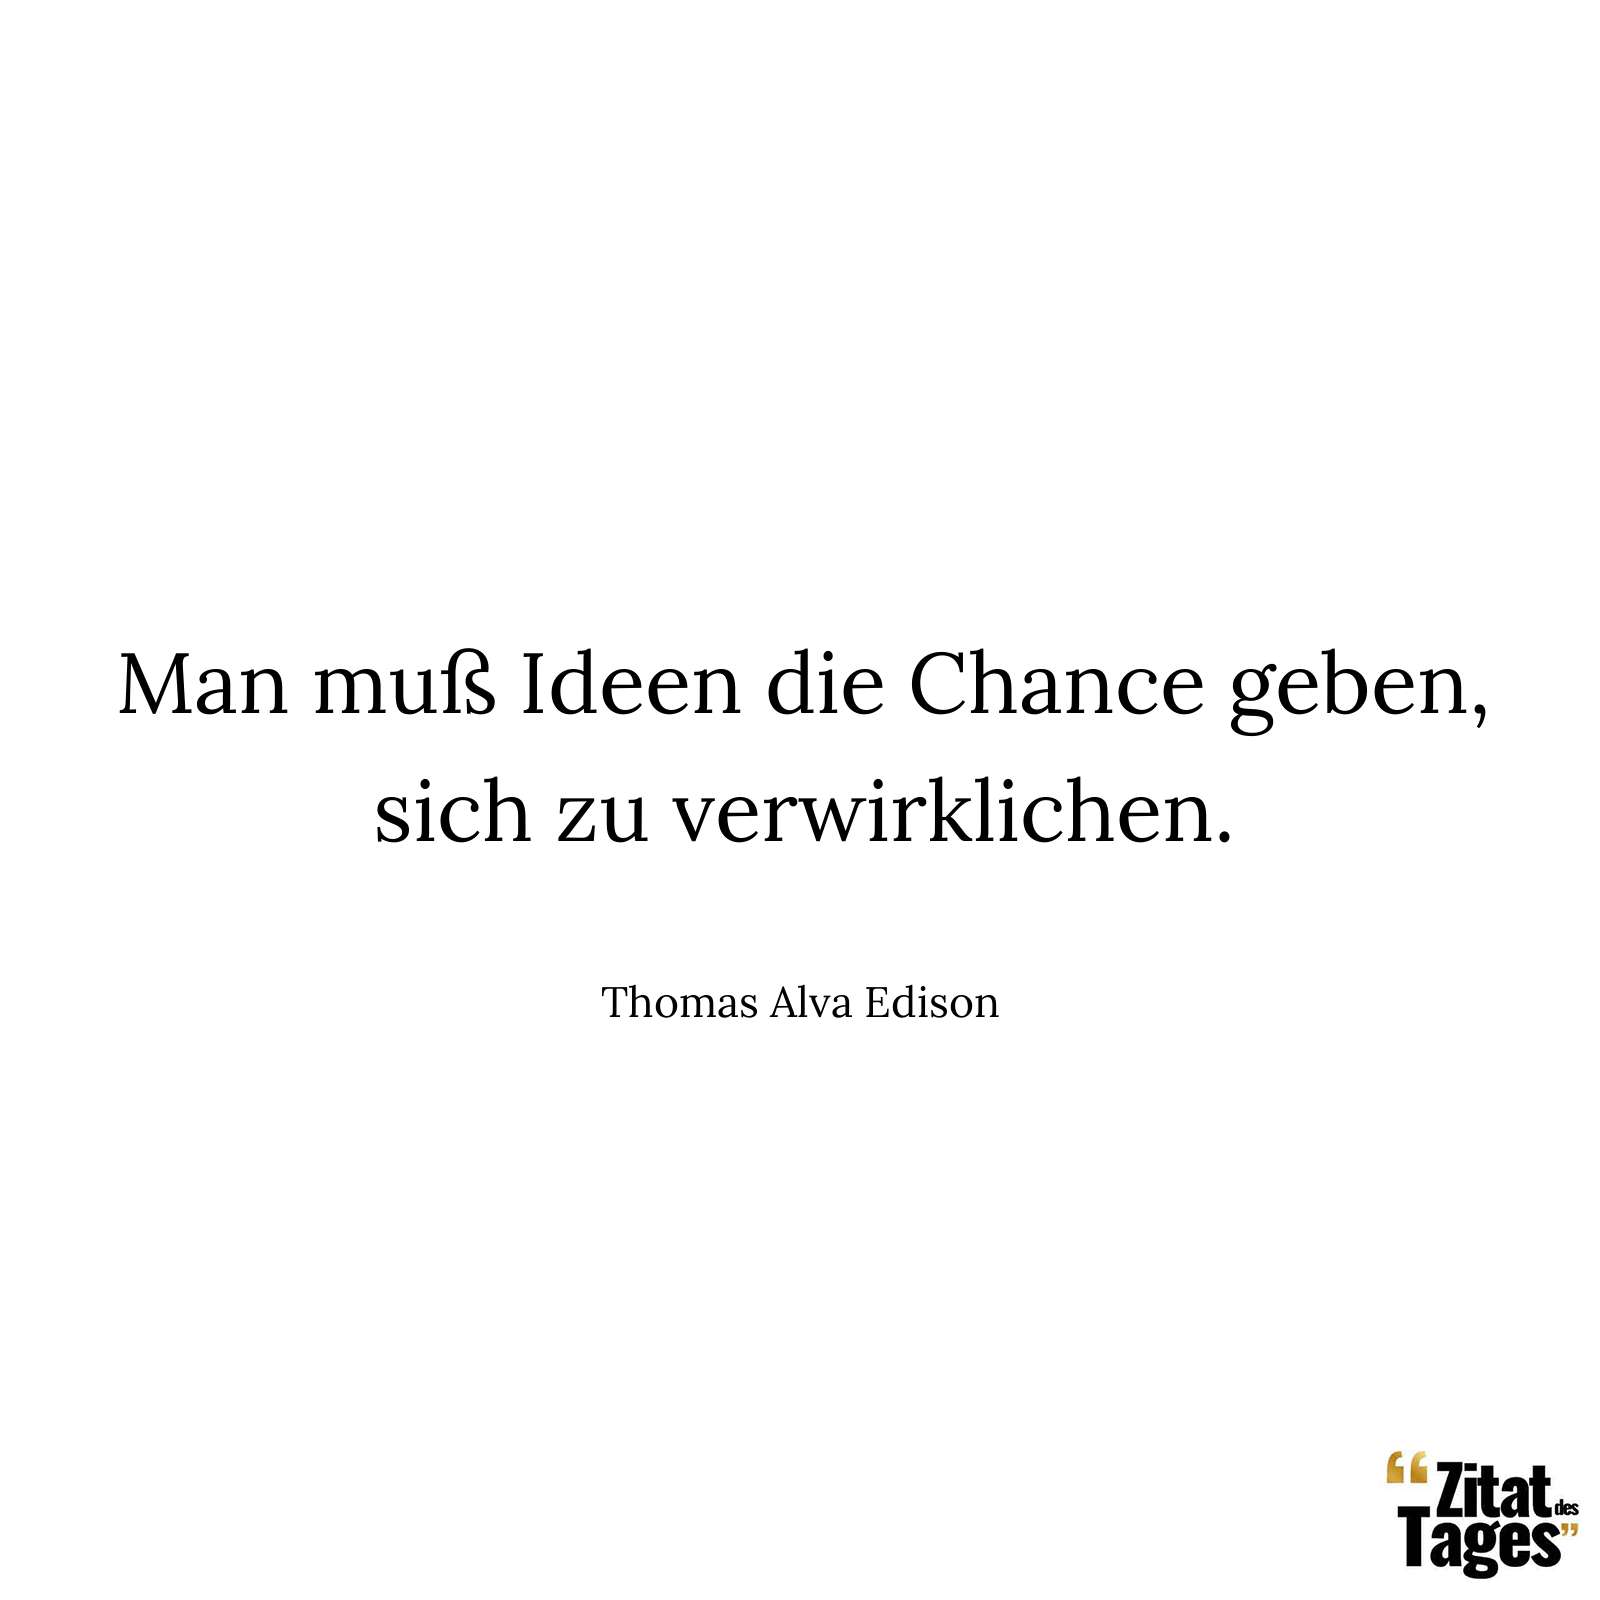 Man muß Ideen die Chance geben, sich zu verwirklichen. - Thomas Alva Edison